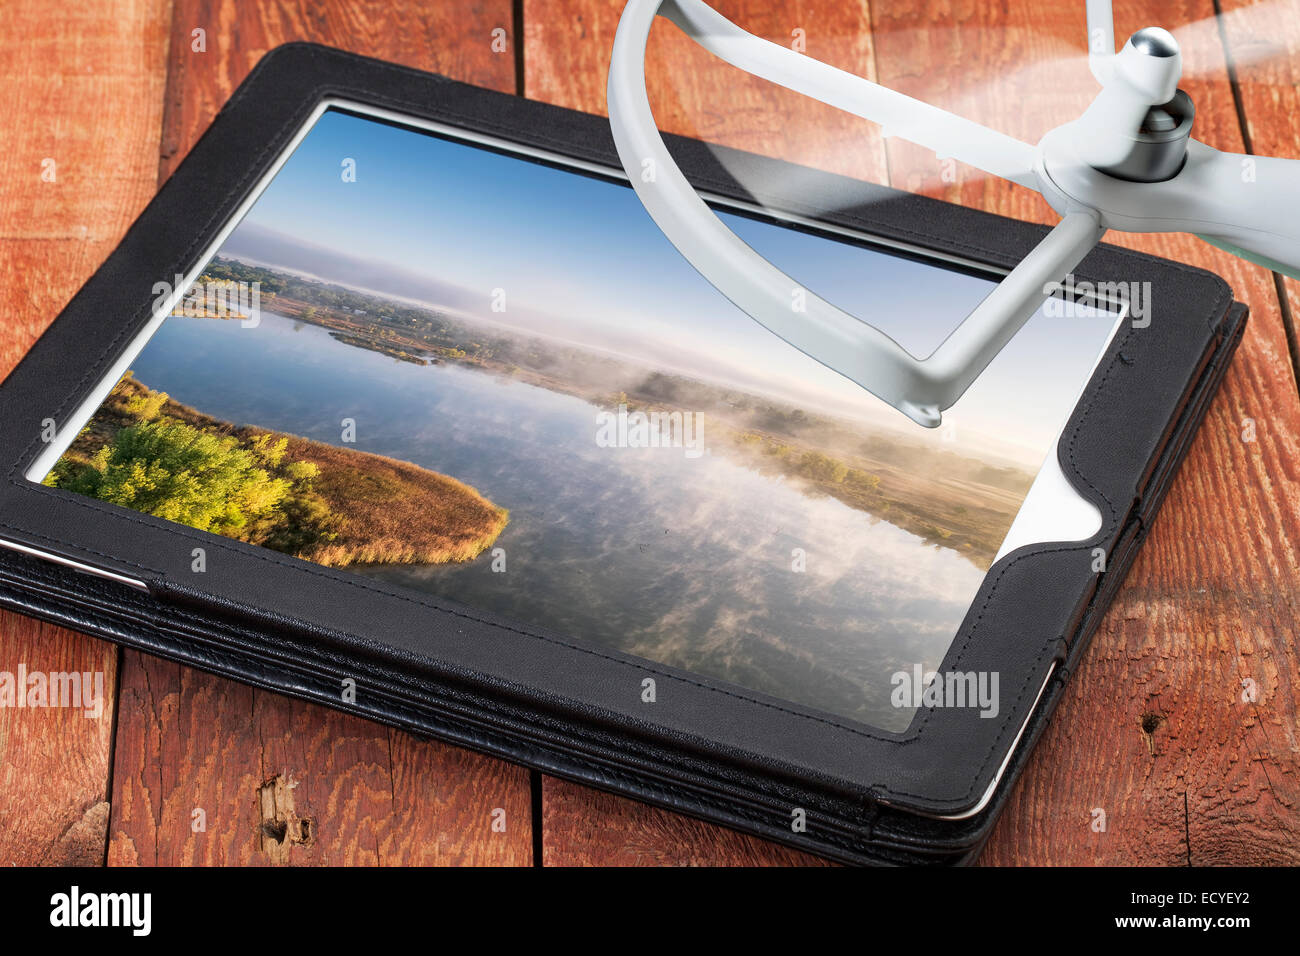 Drone fotografia aerea concetto - rivedere le fotografie aeree di una nebbia lago su una tavoletta digitale con un drone di rotore Foto Stock